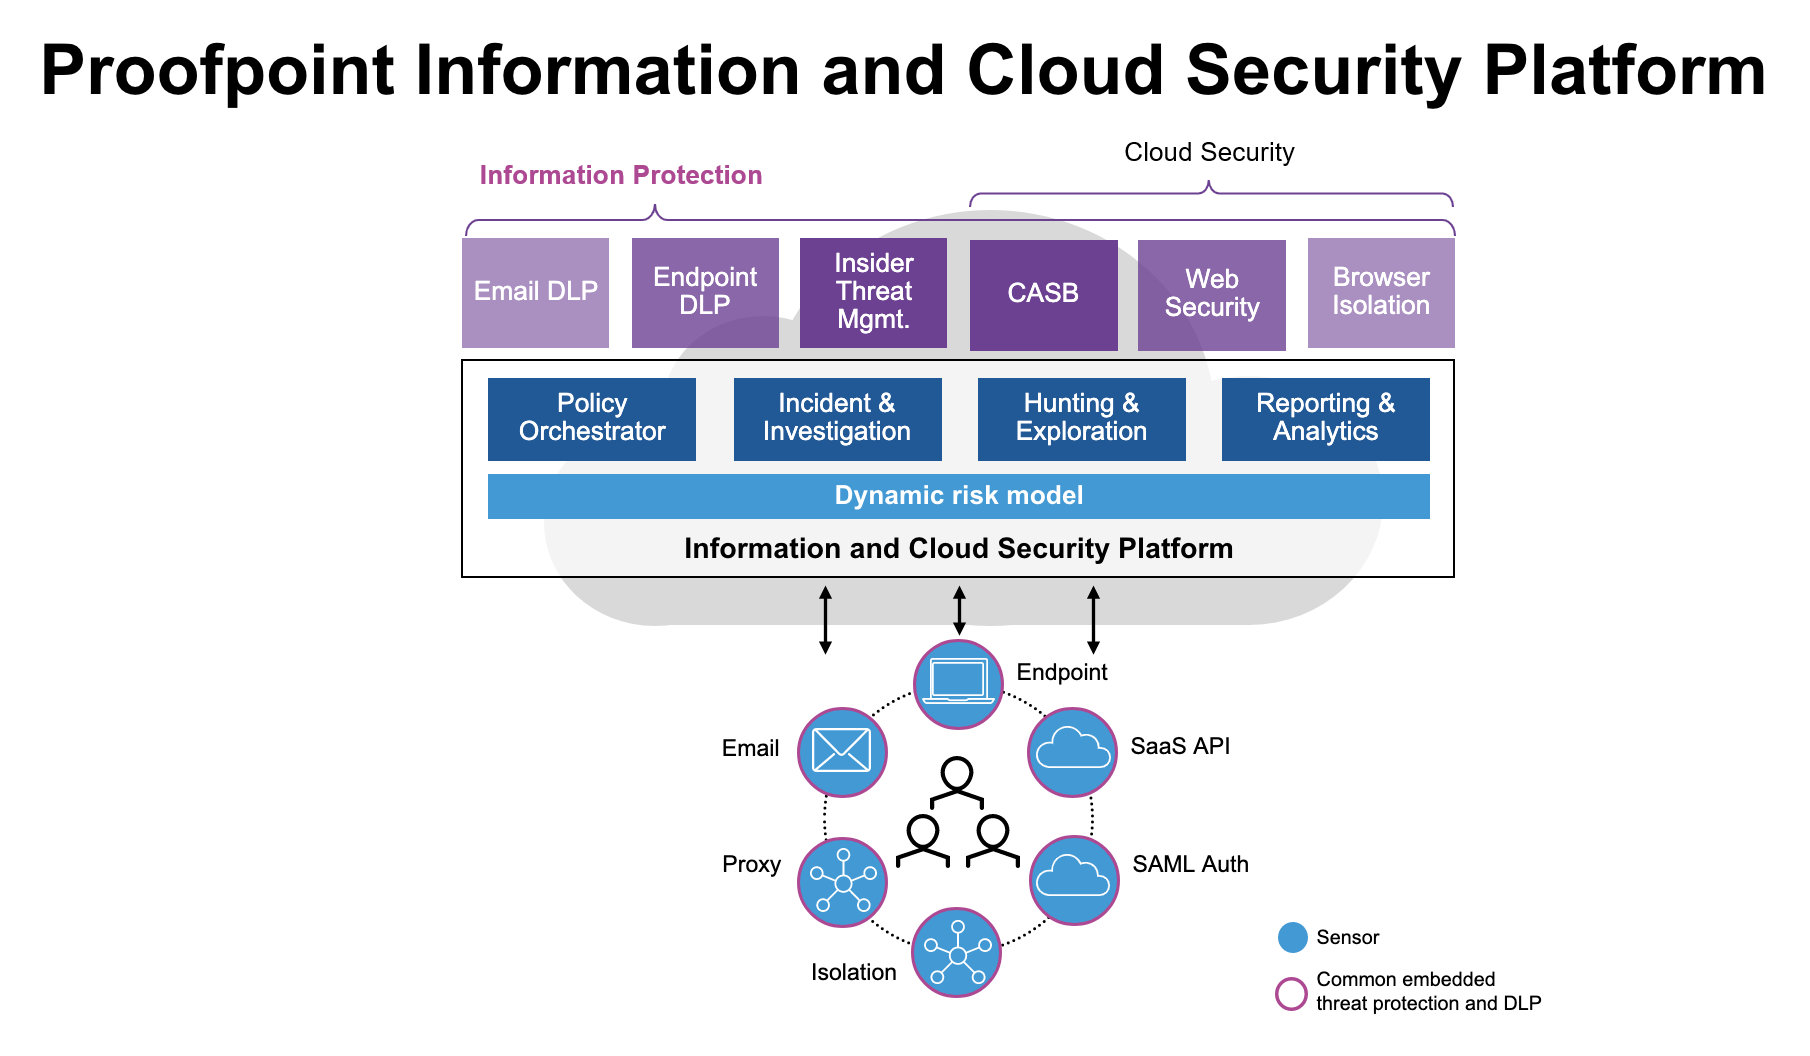 La piattaforma completa Proofpoint Information and Cloud Security offre potenti funzionalità per ridurre i rischi incentrati sulle persone che un’azienda deve affrontare.